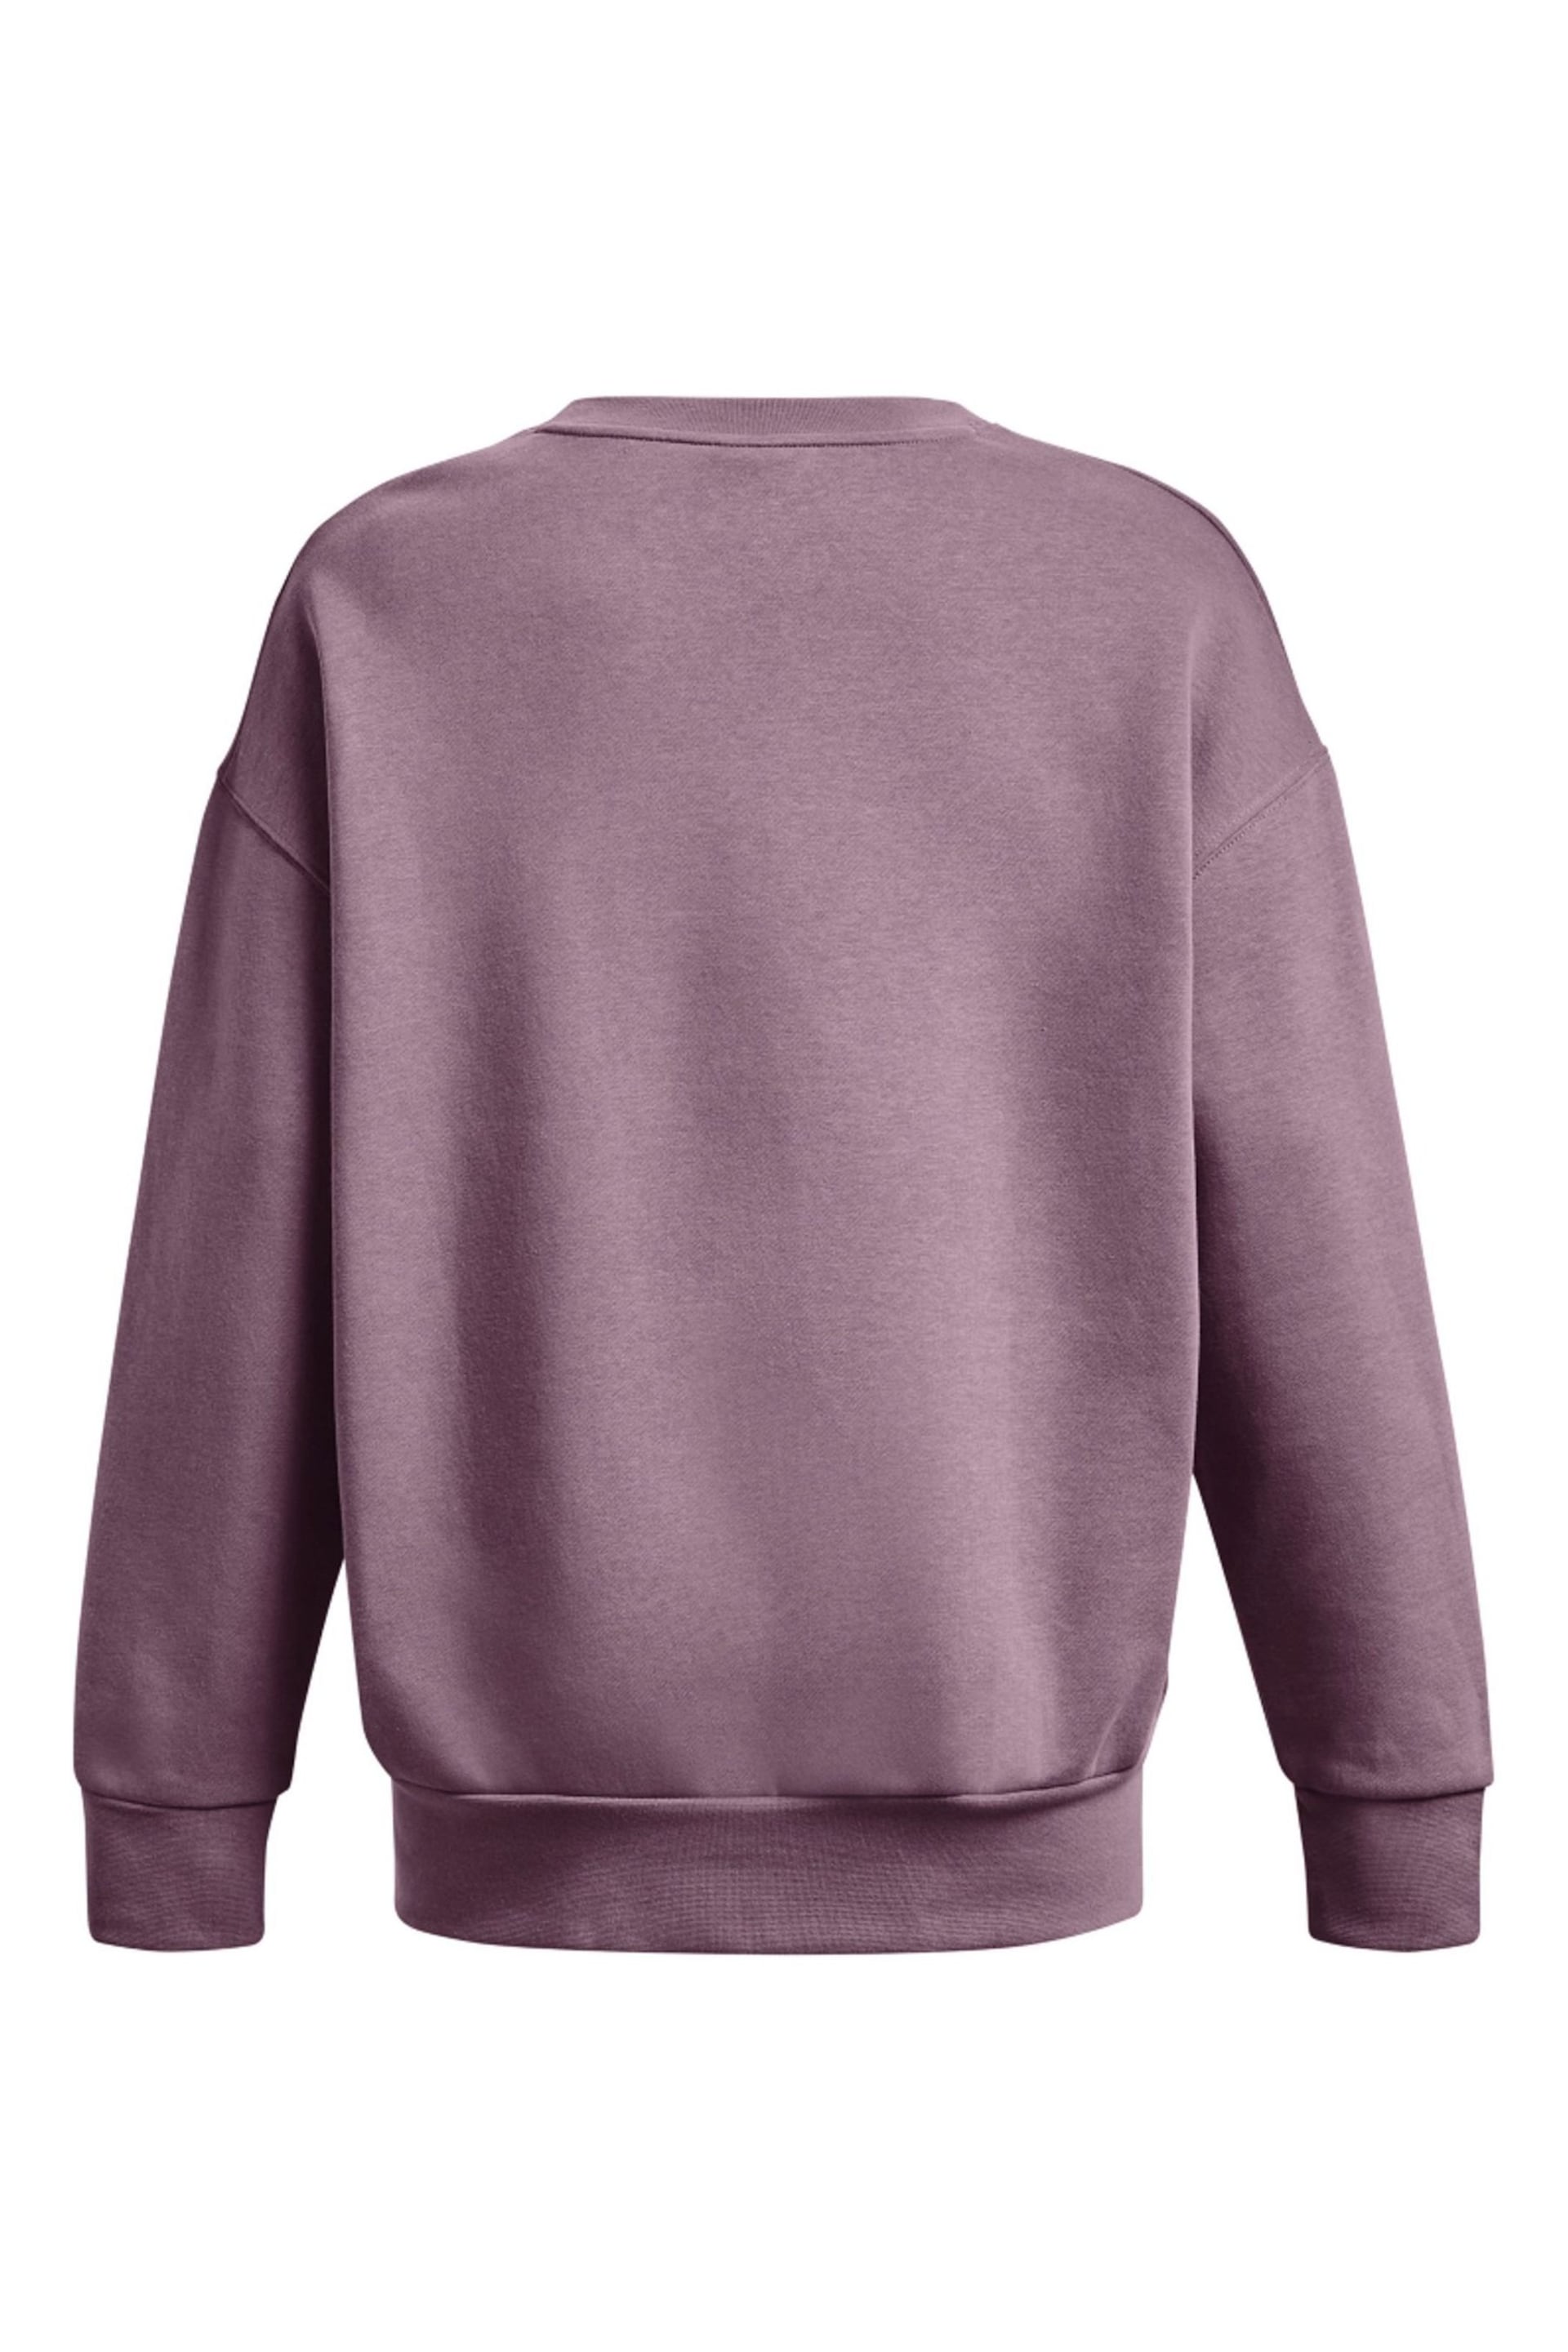 Under Armour Purple Essential Fleece Oversized Crew Sweatshirt - Image 6 of 6